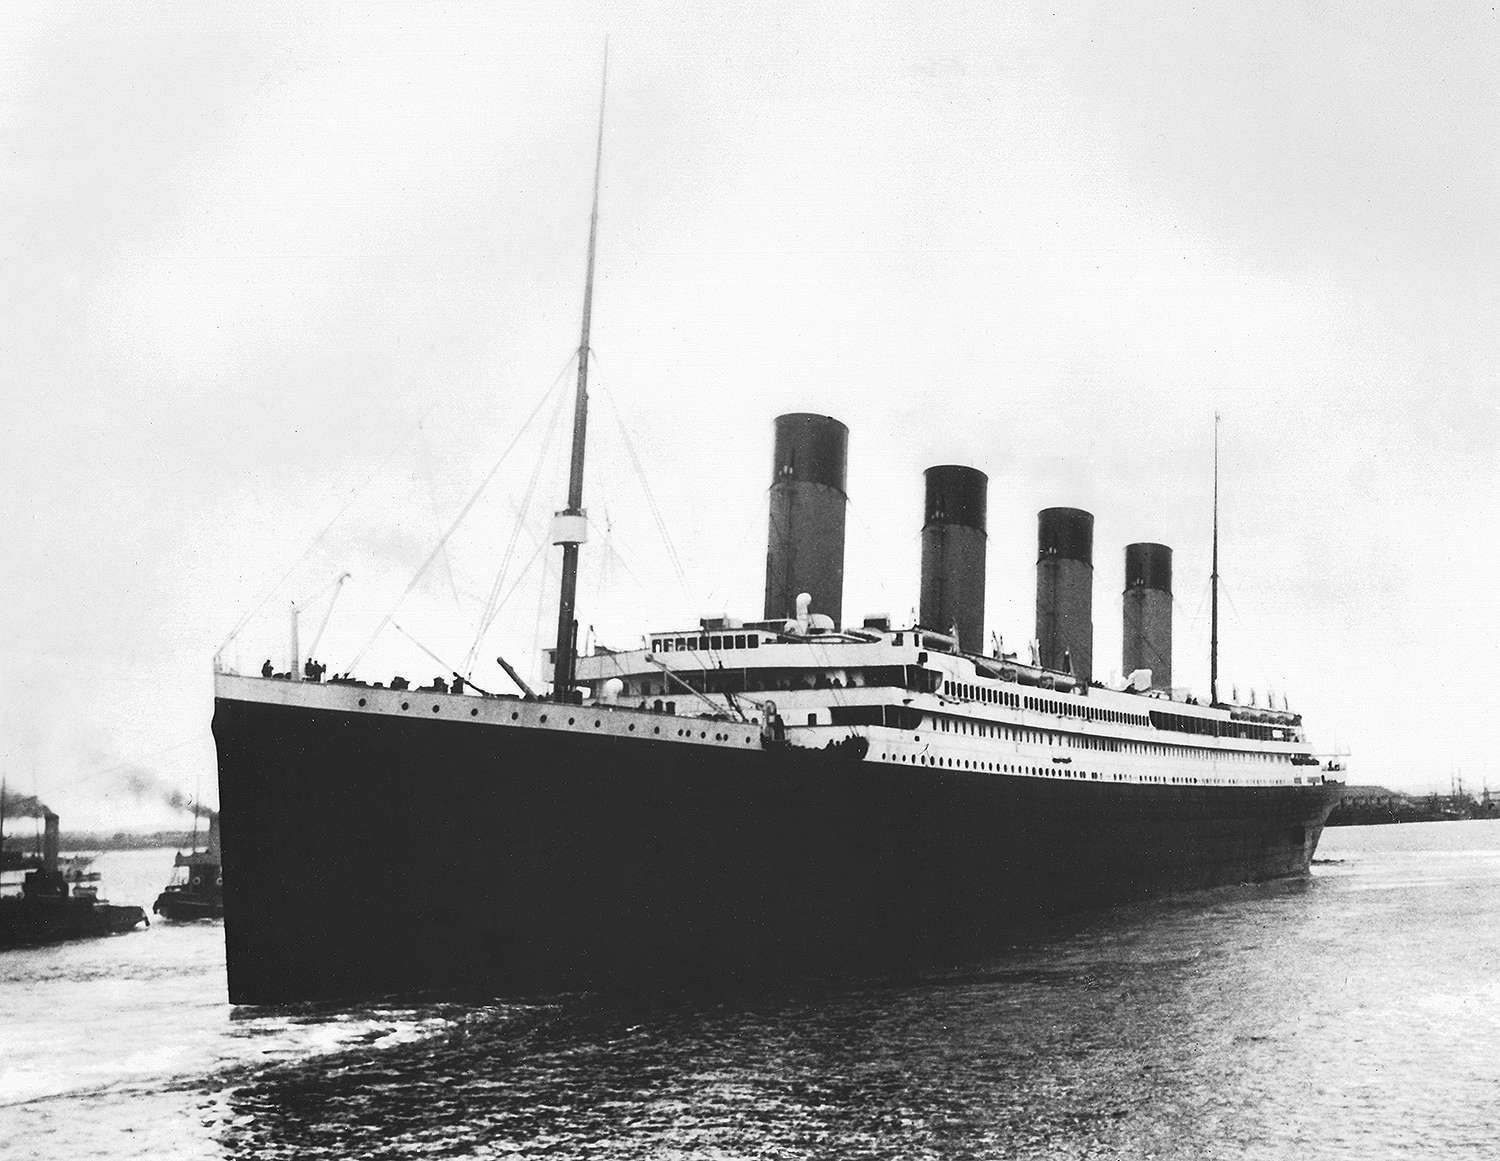 Tàu Titanic và lí do thế giới vẫn bị mê hoặc bởi câu chuyện về con tàu bi kịch - Ảnh 2.